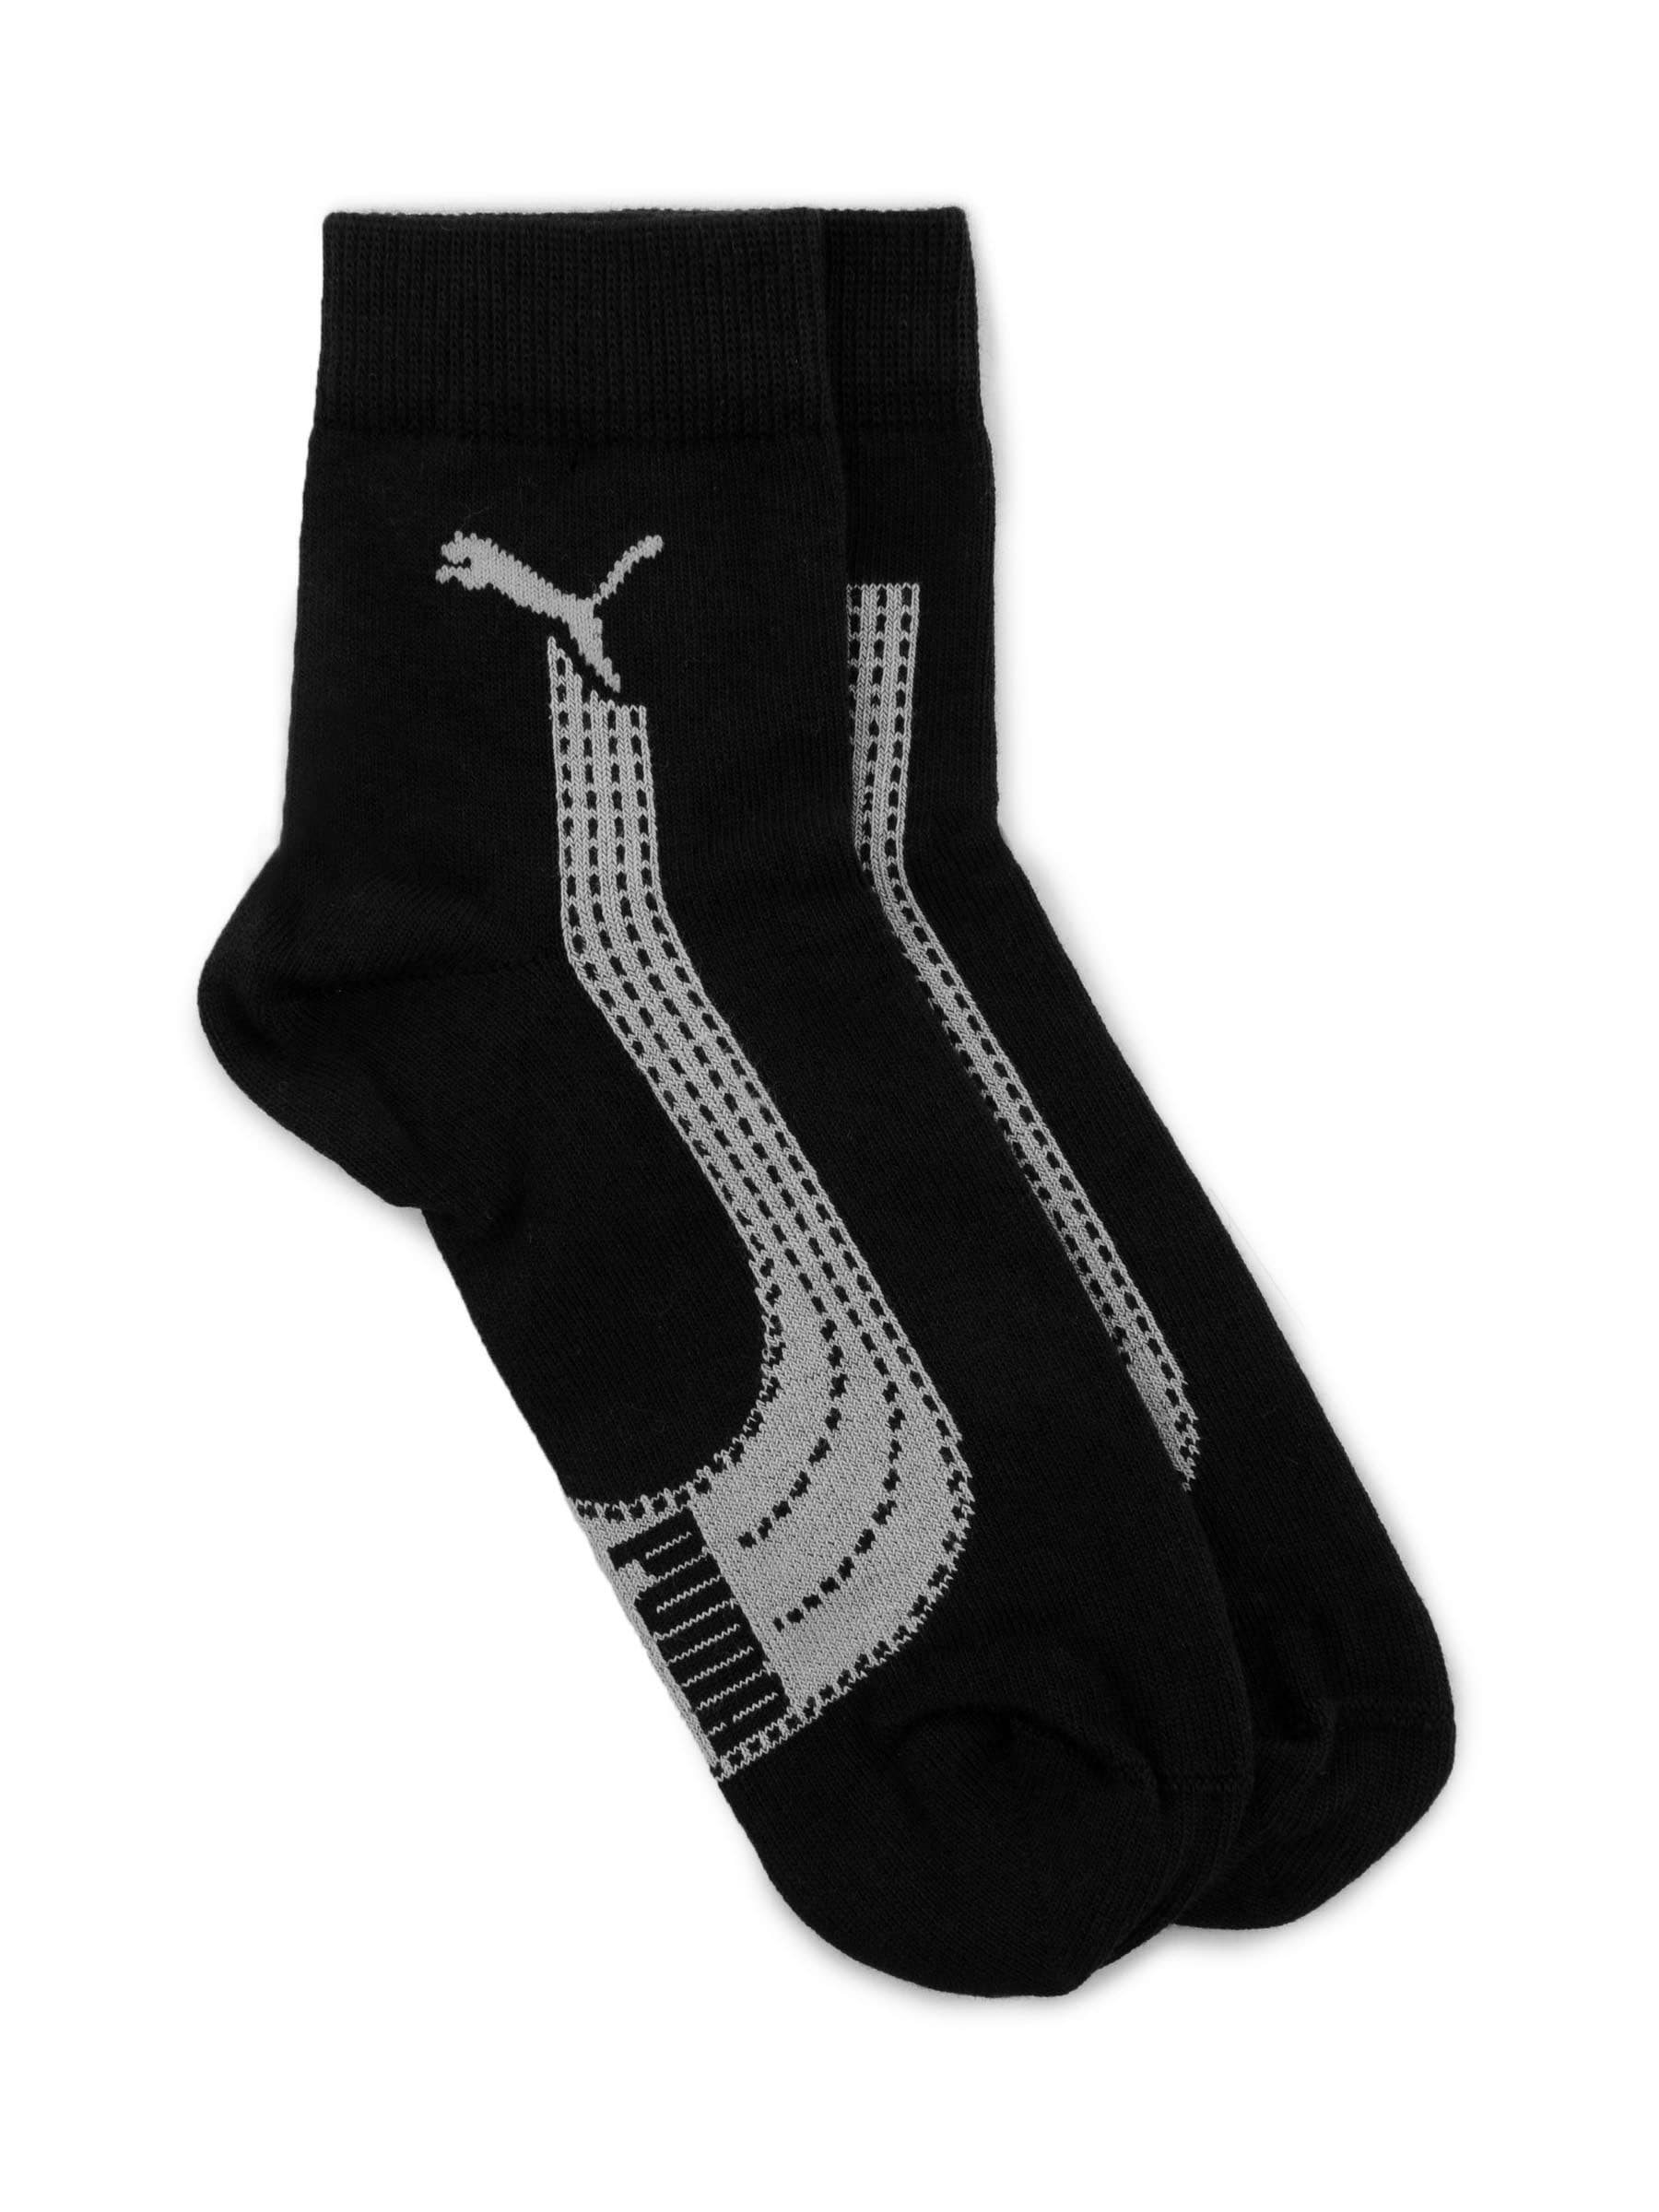 Puma Men Formstripe Short Black Socks